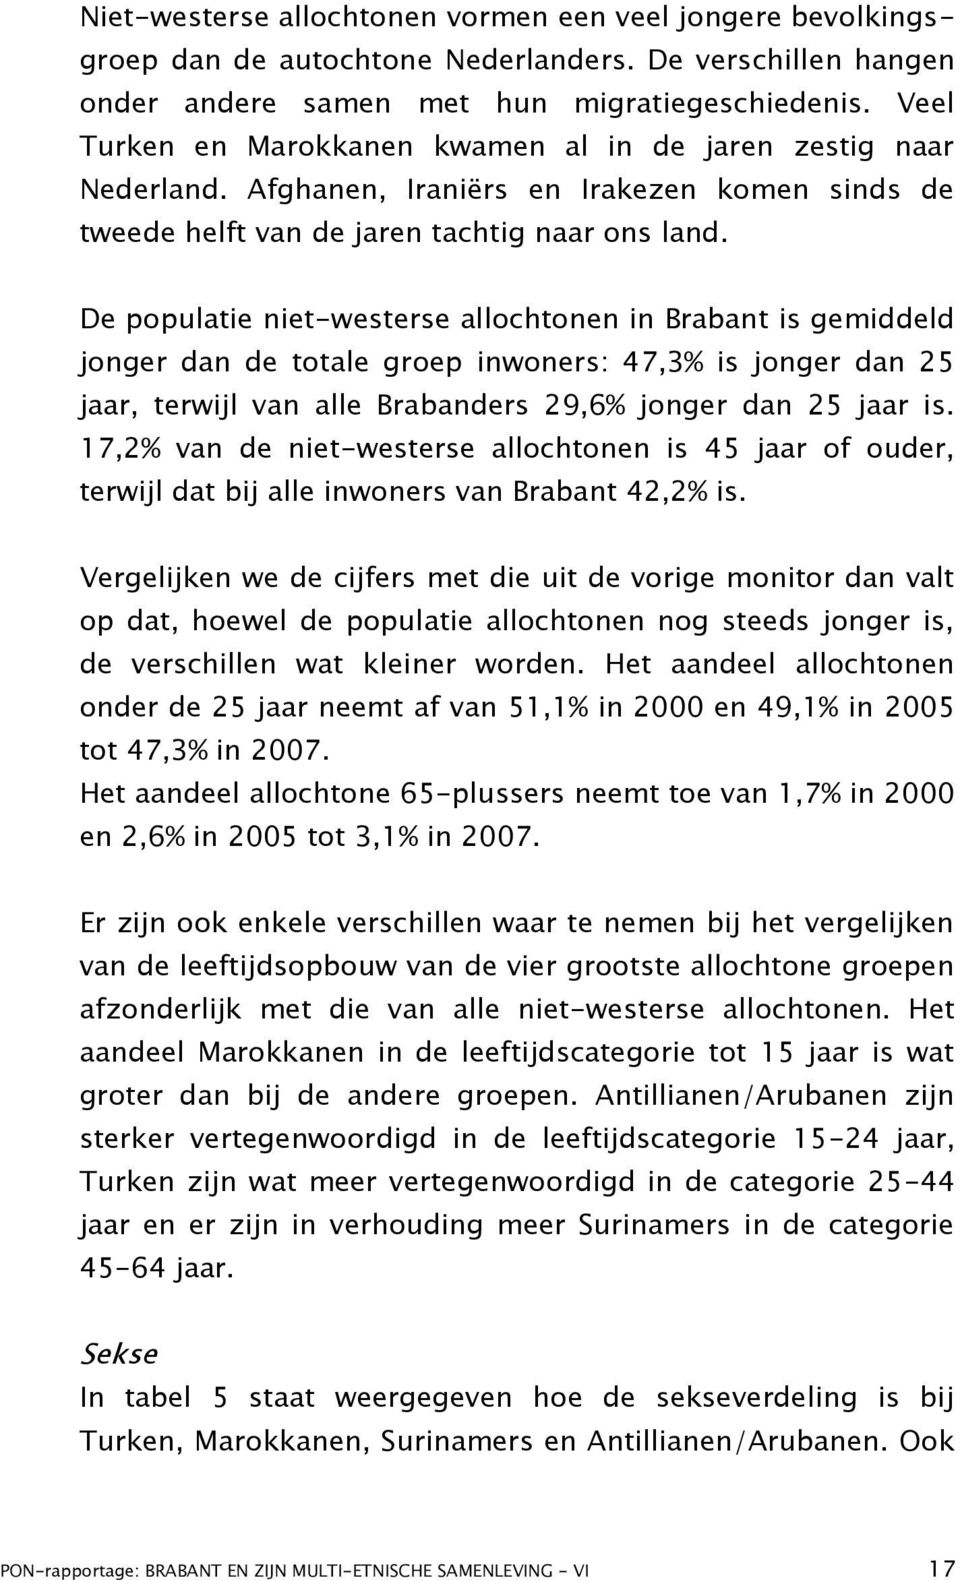 De populatie niet-westerse allochtonen in Brabant is gemiddeld jonger dan de totale groep inwoners: 47,3% is jonger dan 25 jaar, terwijl van alle Brabanders 29,6% jonger dan 25 jaar is.